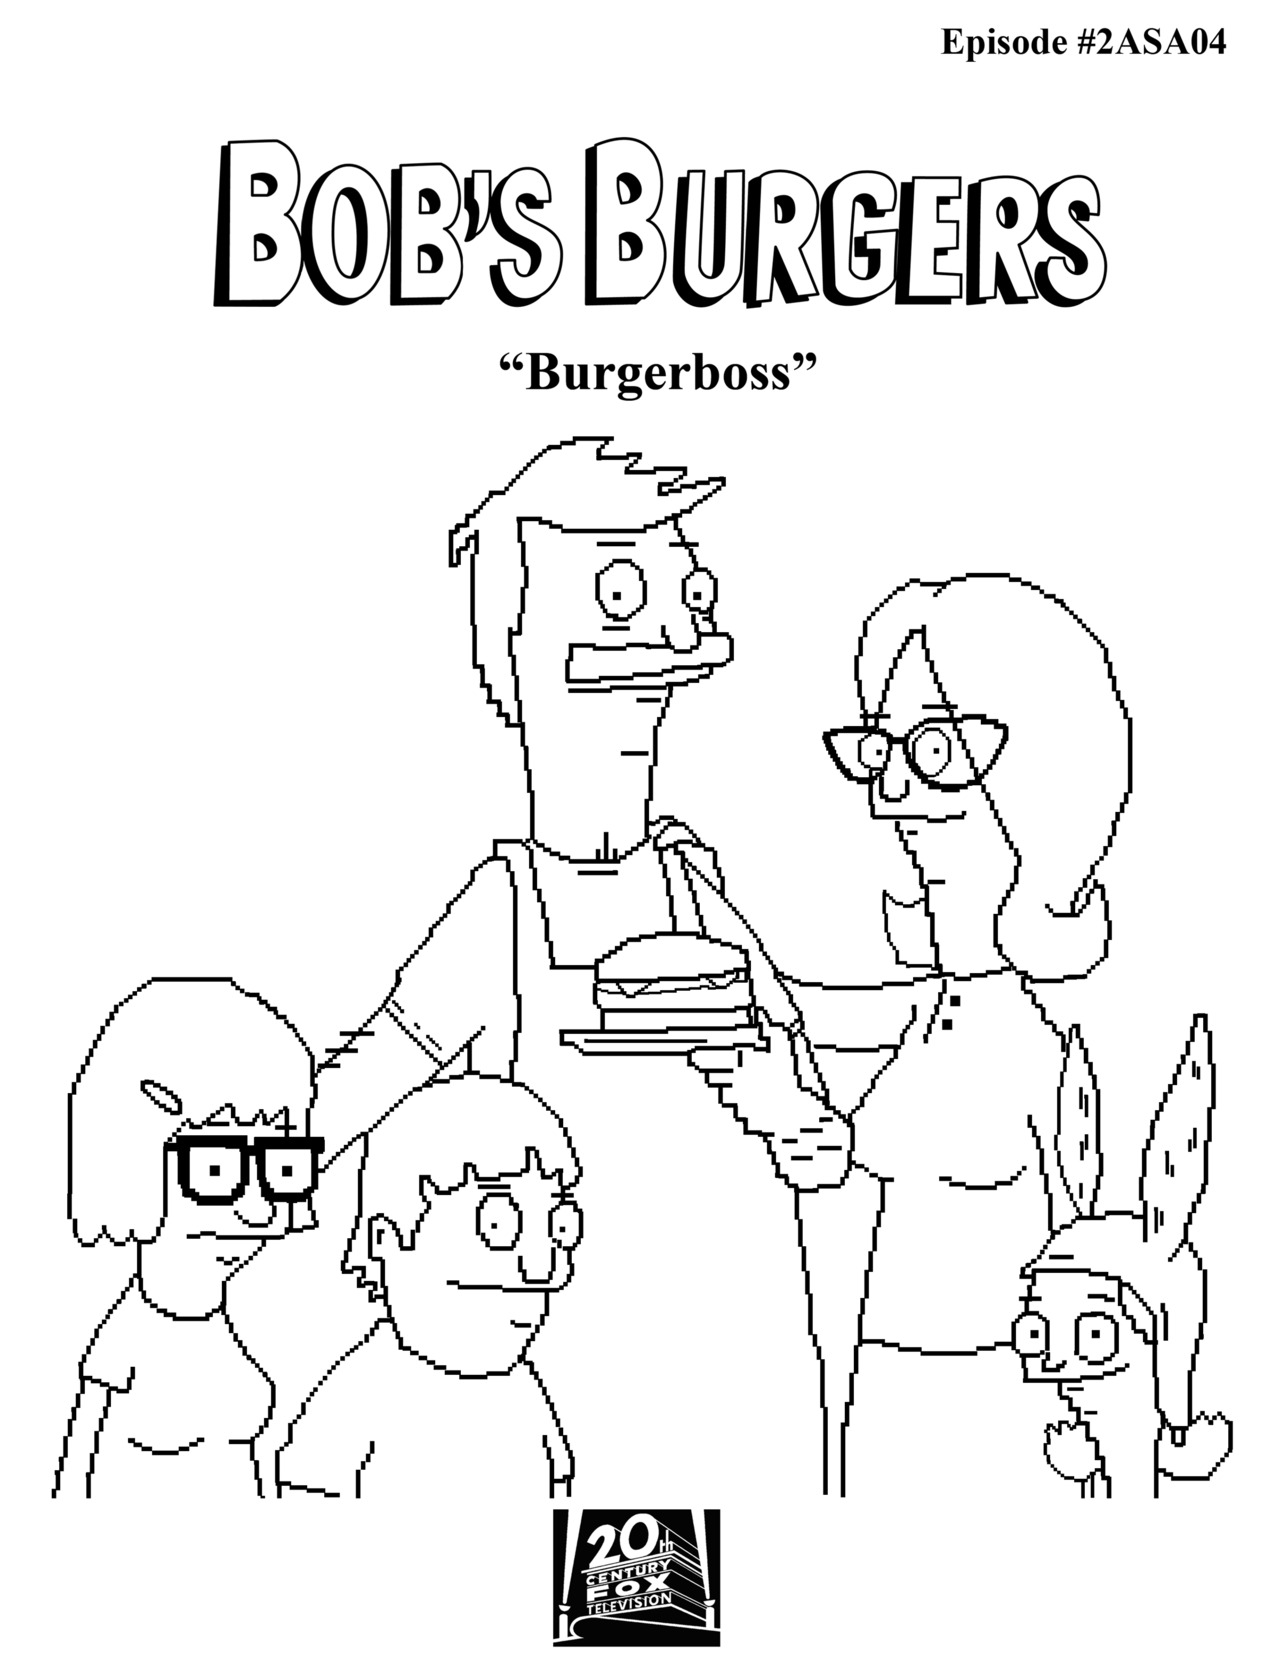 Image - www.paulmartinsmith.com | Bob&#39;s Burgers Wiki | Fandom powered by Wikia